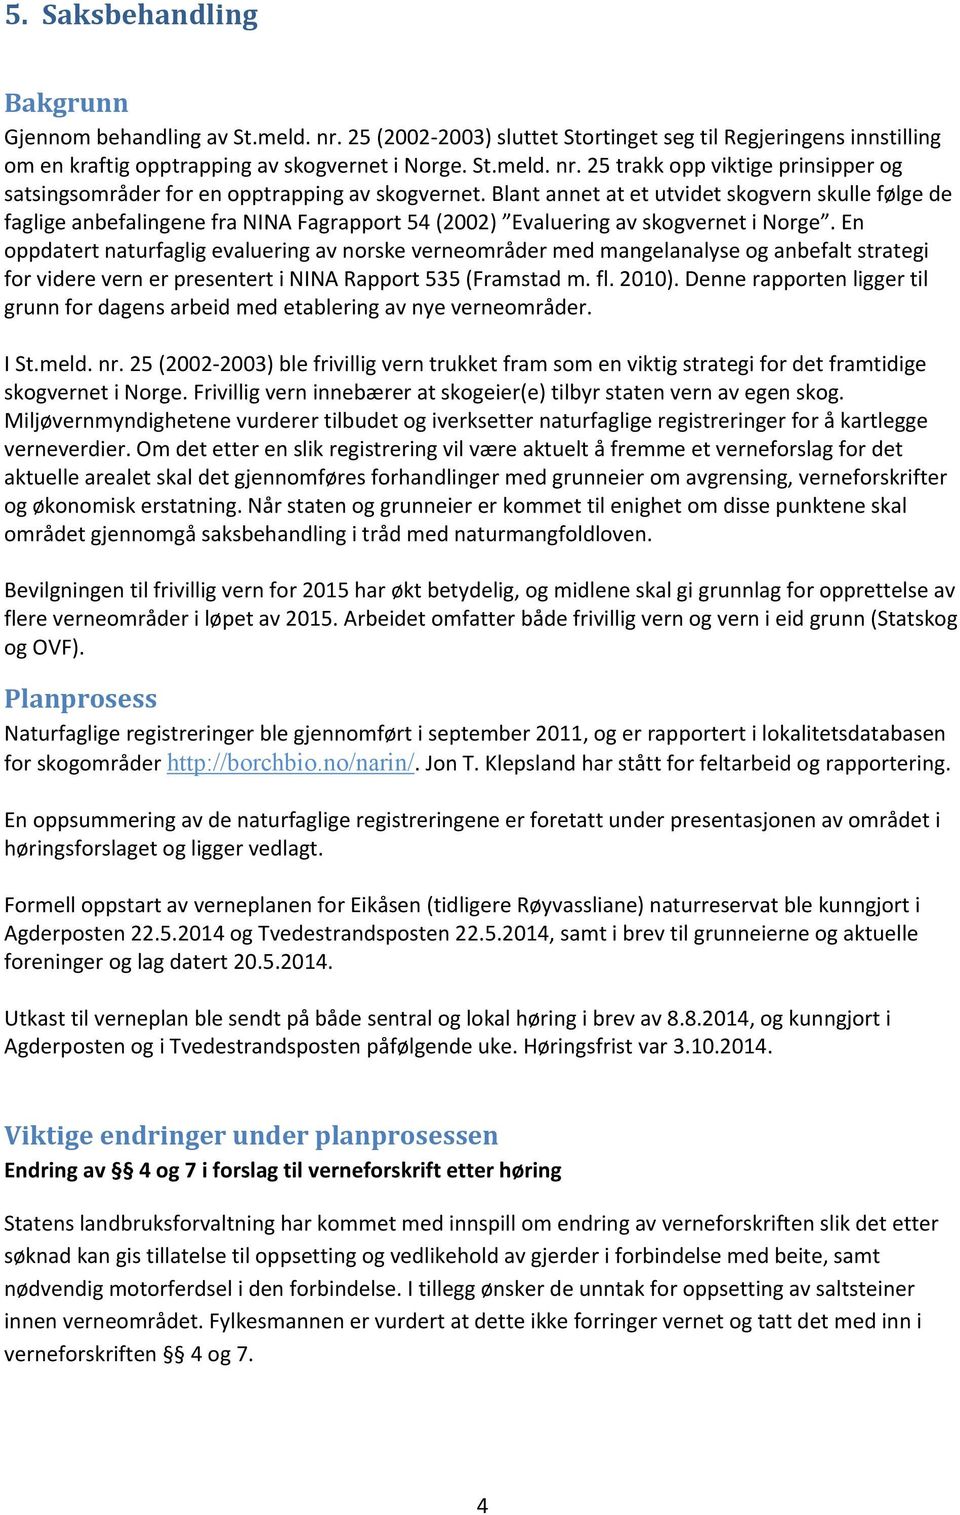 En oppdatert naturfaglig evaluering av norske verneområder med mangelanalyse og anbefalt strategi for videre vern er presentert i NINA Rapport 535 (Framstad m. fl. 2010).